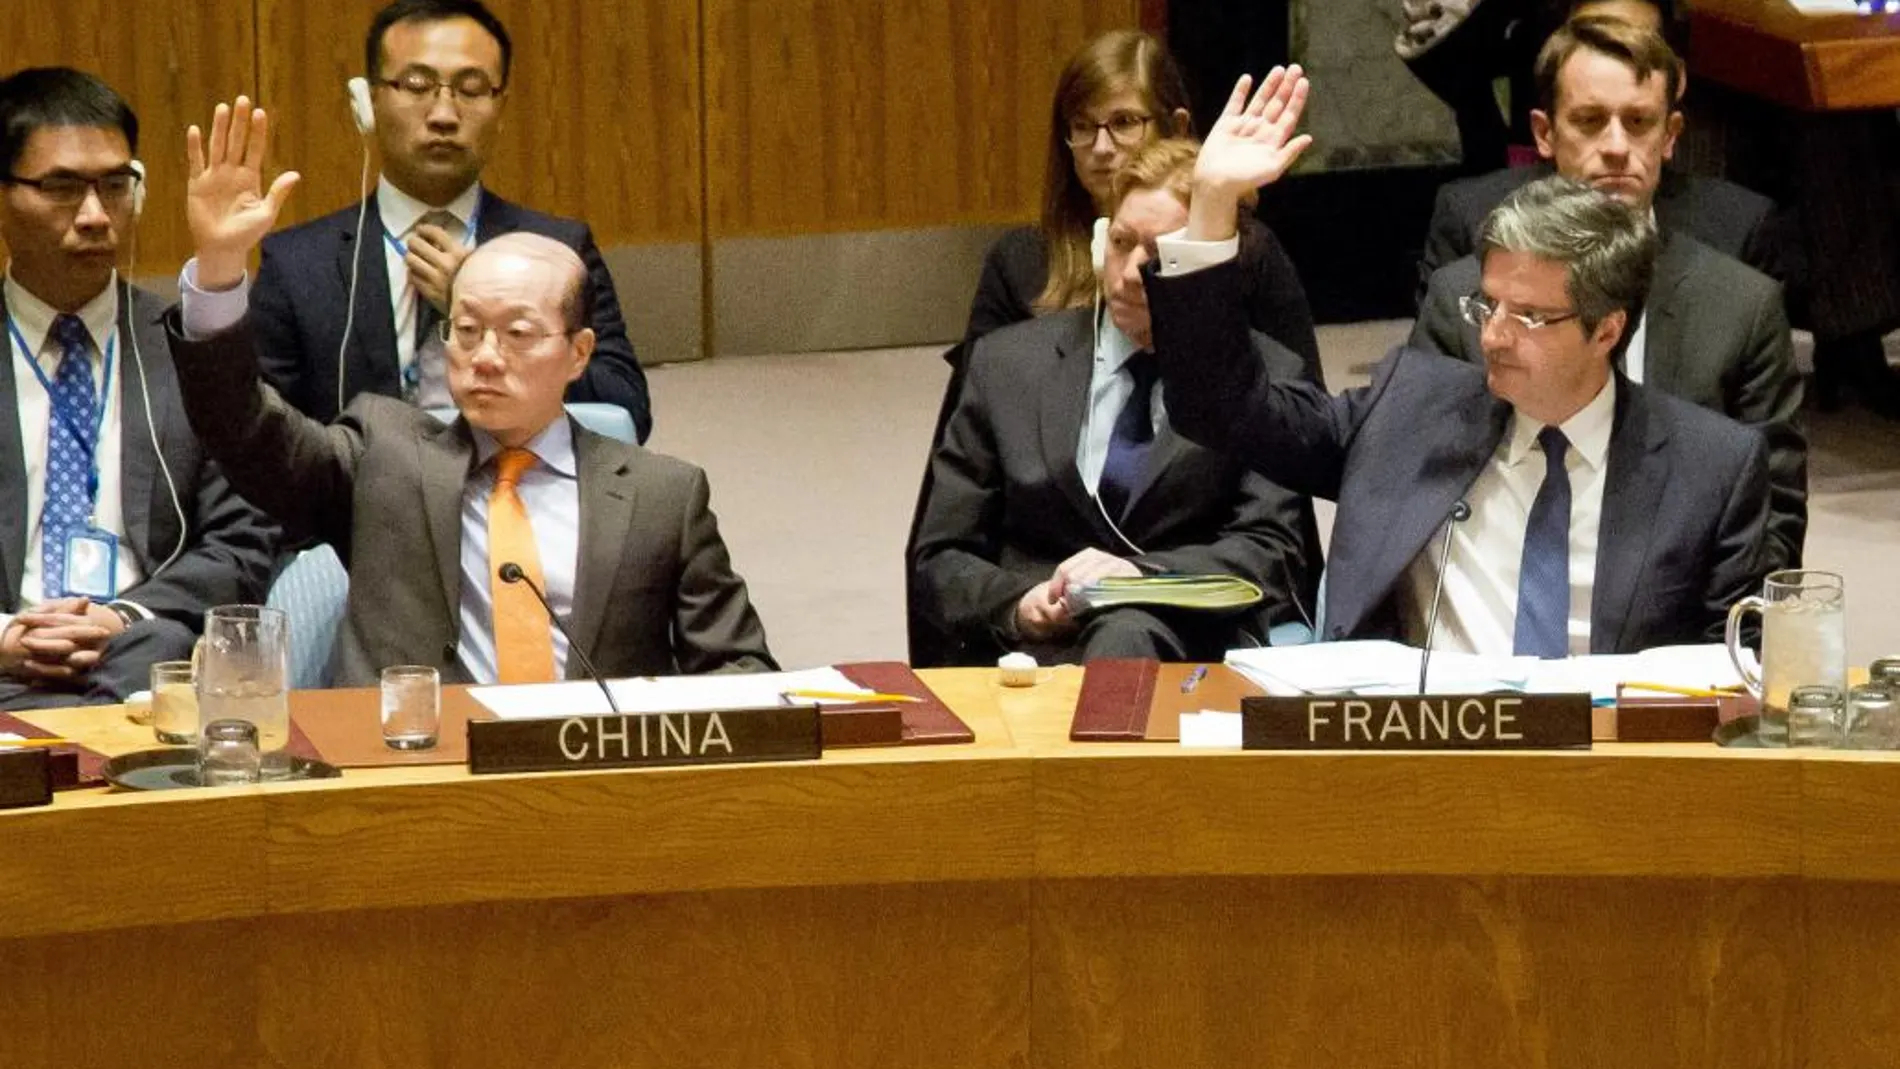 El embajador de China ante la ONU, Liu Jieyi, izquierda, y el embajador Francois Delattre, durante la votación